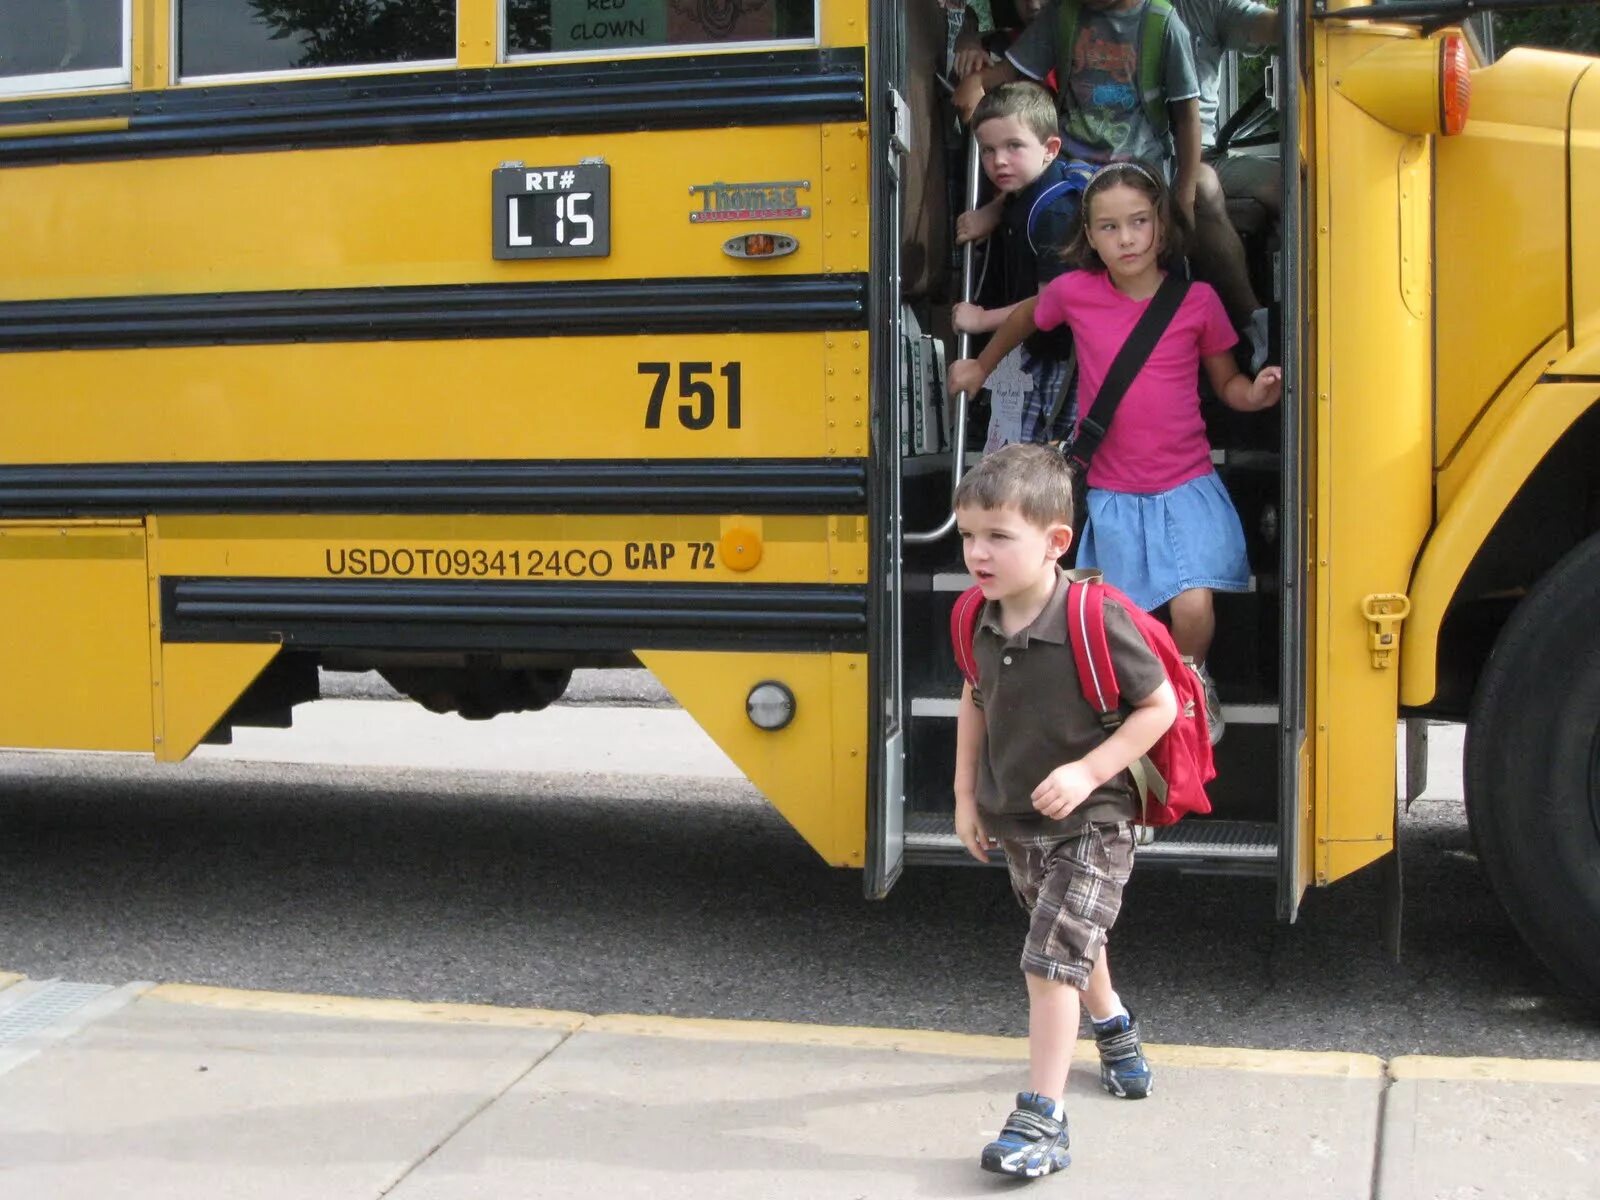 Выходить из автобуса. Лети выходят из автобуса. Дети виходят из автобус. Девушка выходит из автобуса. To get on a train